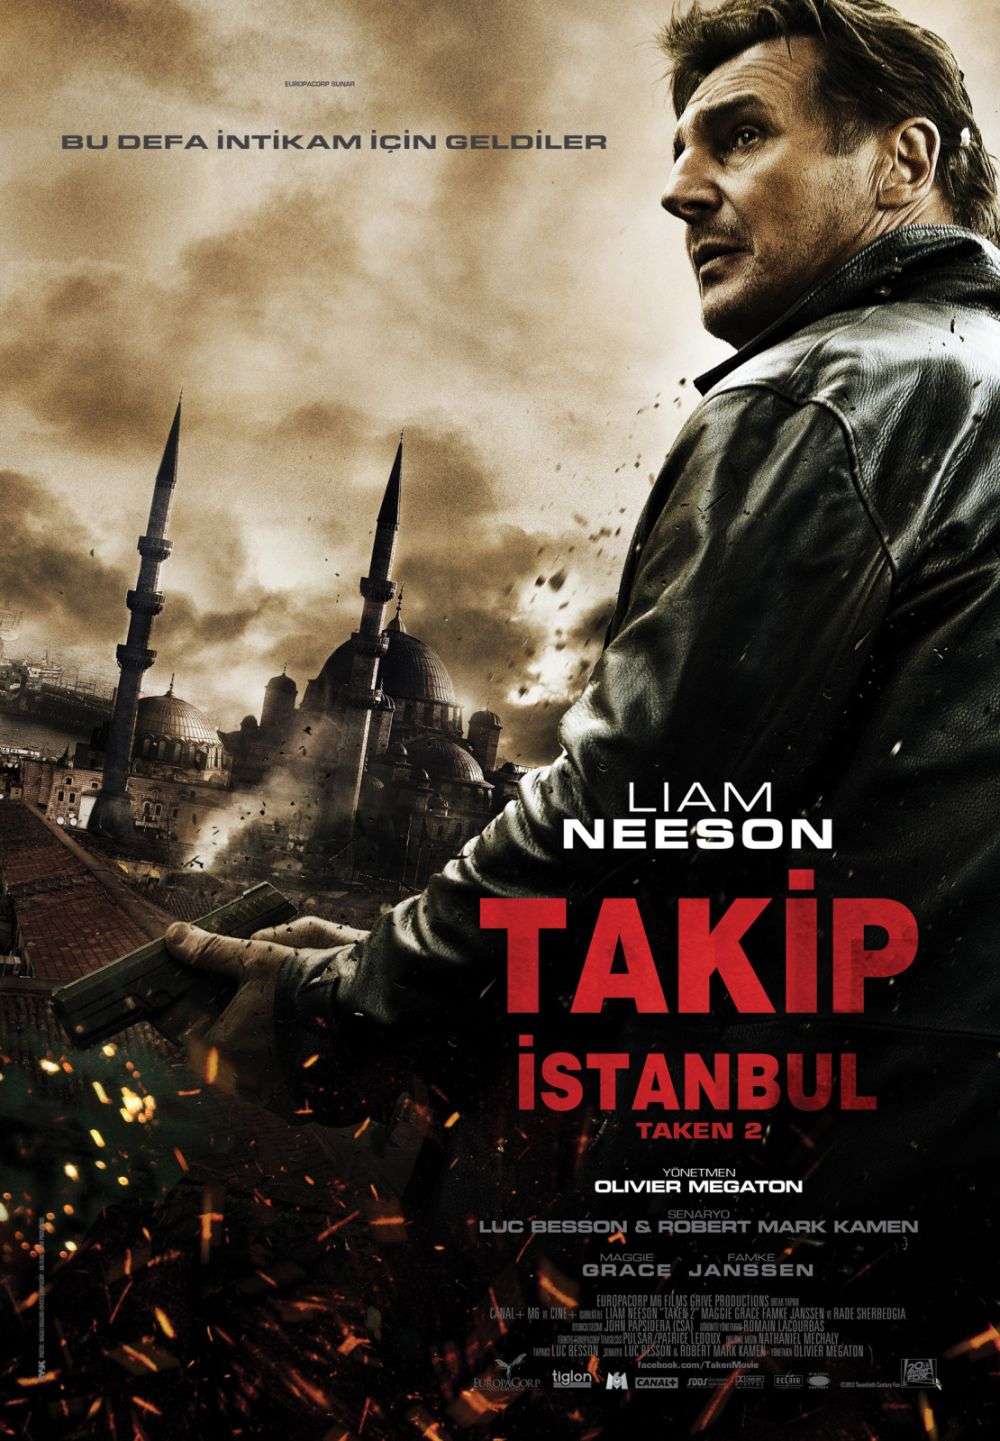 Takip İstanbul - 2012 BRRip XviD AC3 - Türkçe Altyazılı indir